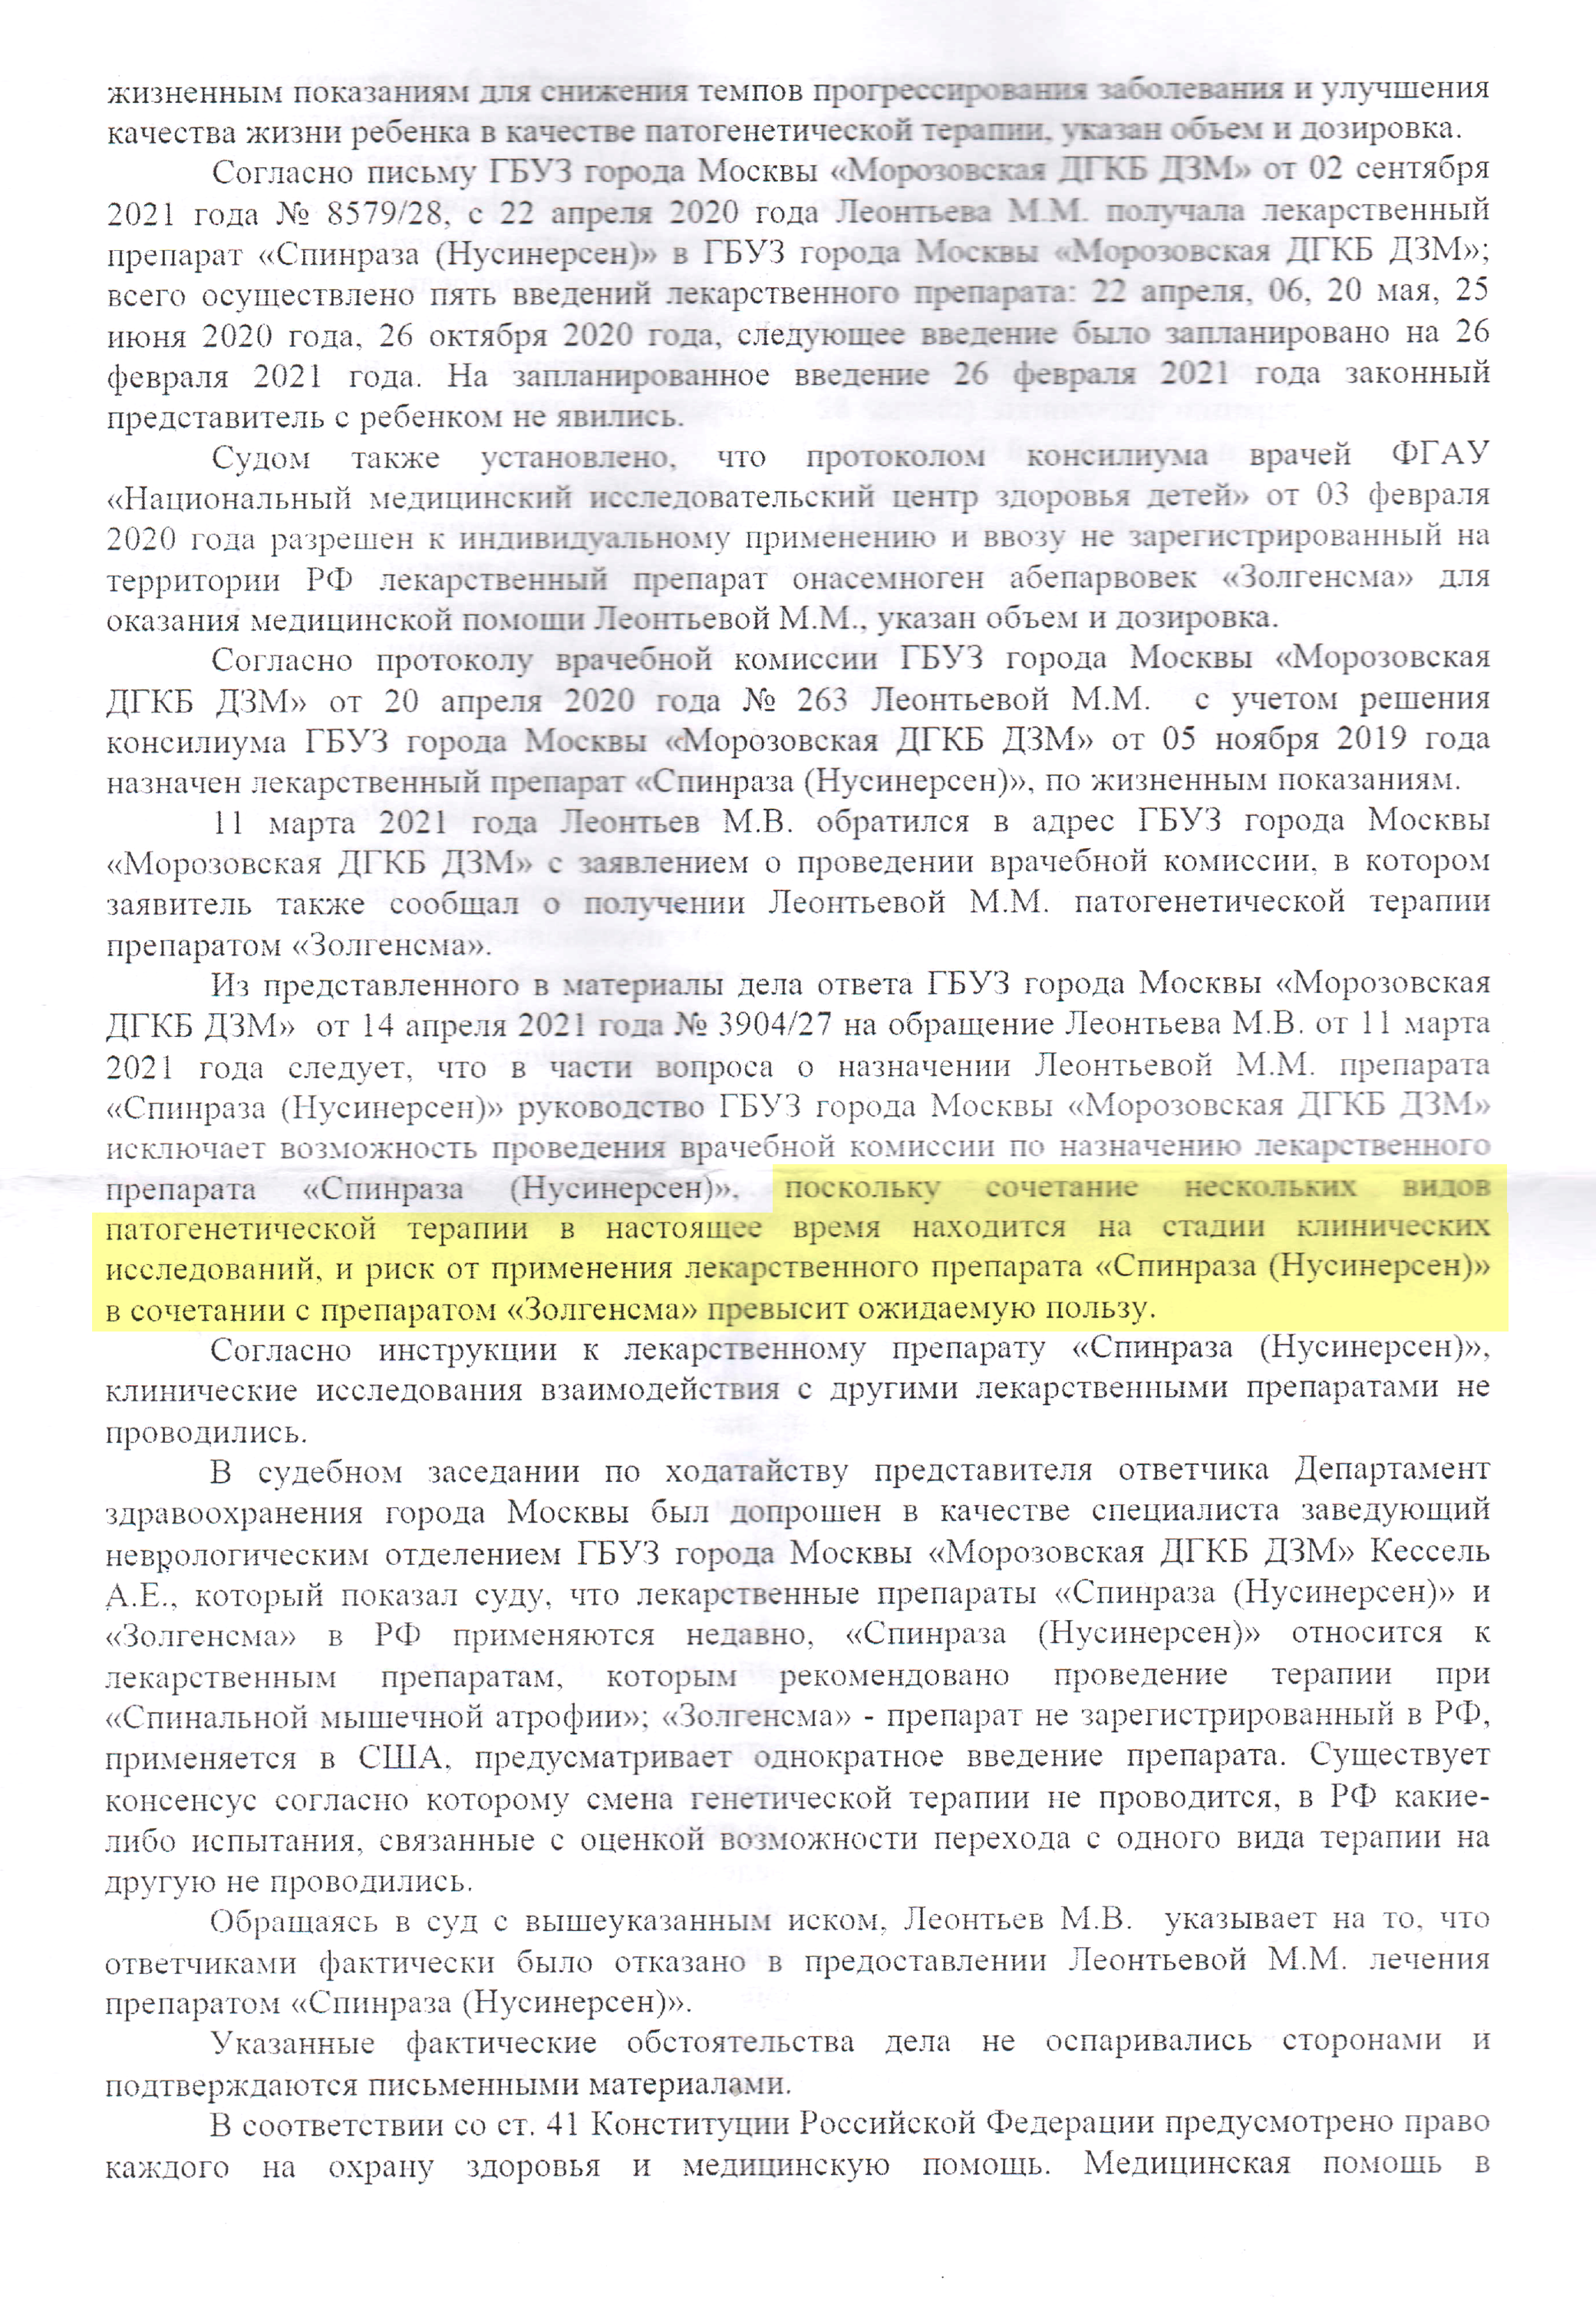 В своем решении Тверской суд указал, что клинические испытания совместимости «Спинразы» с другими препаратами не проводились. Из⁠-⁠за этого риск продолжения терапии превышает возможную пользу